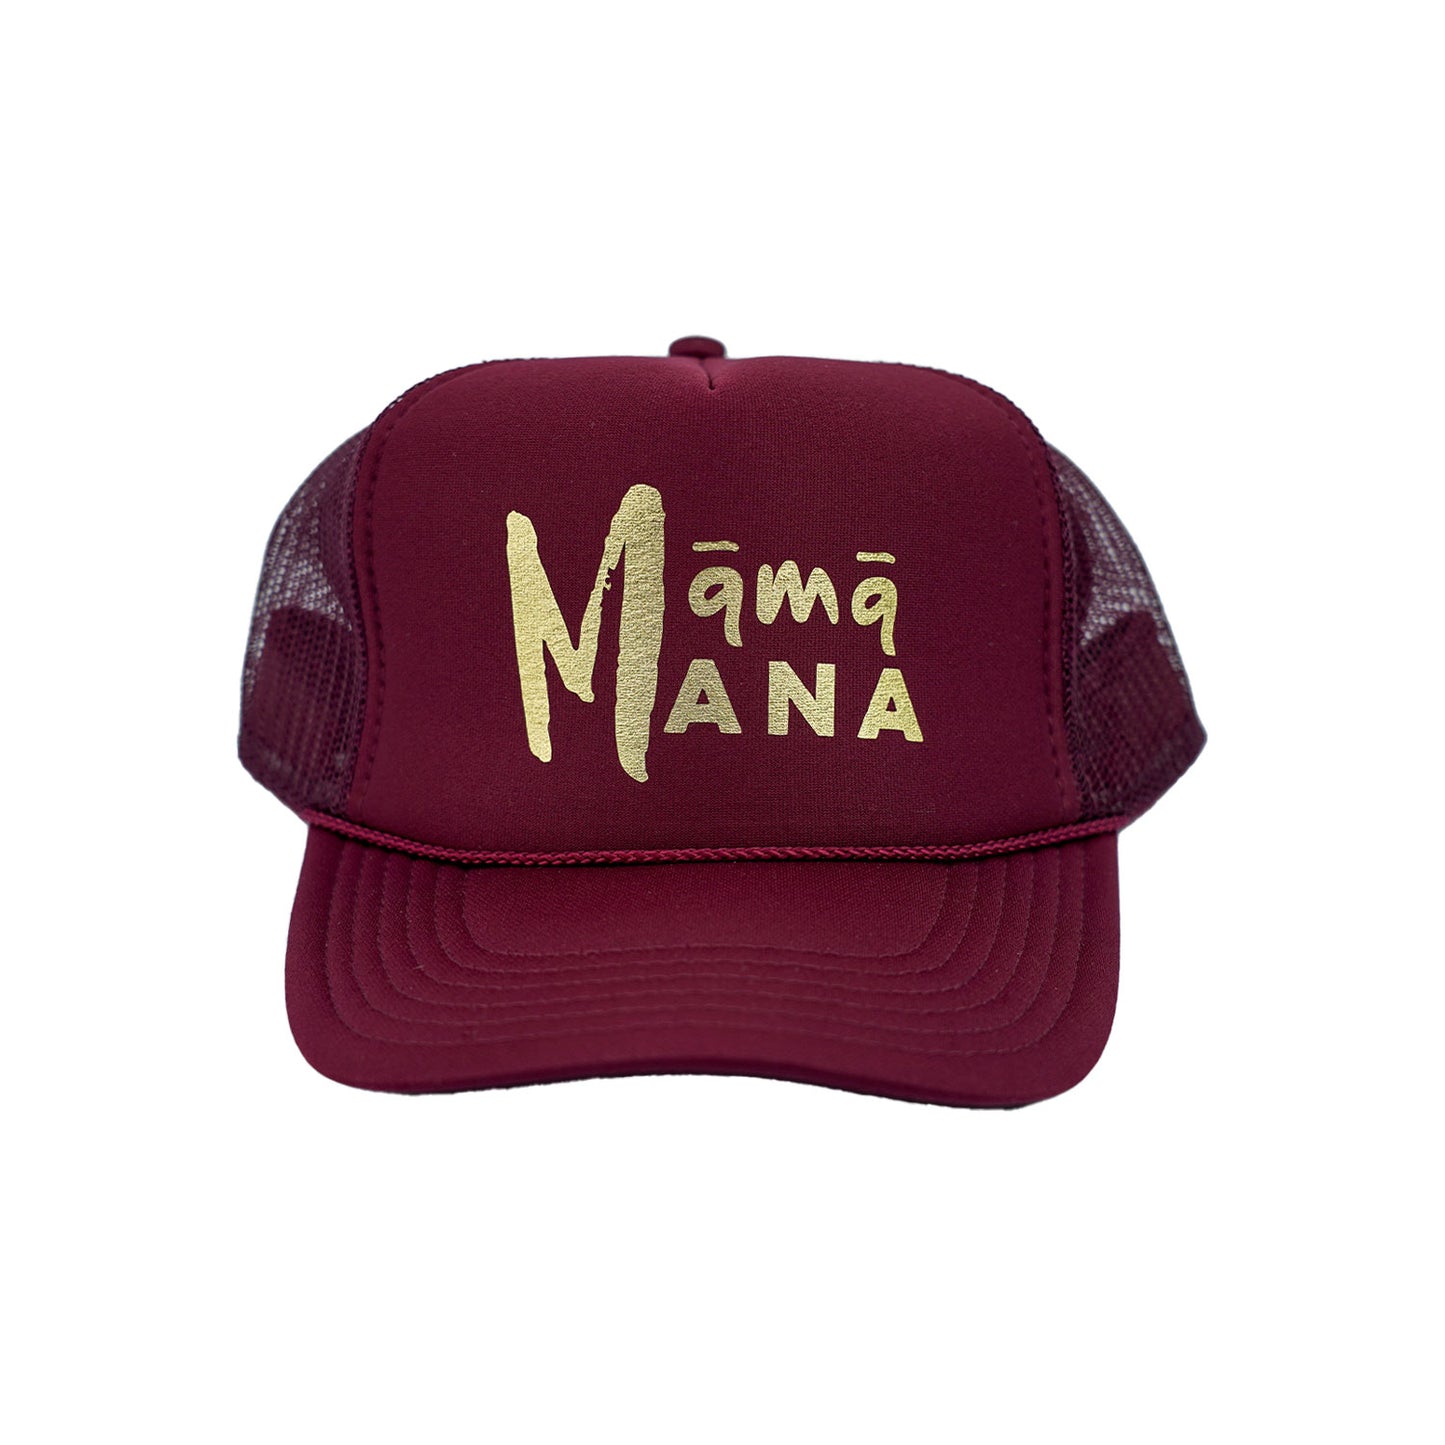 Māmā Mana Gold Foil Trucker Hat - Maroon